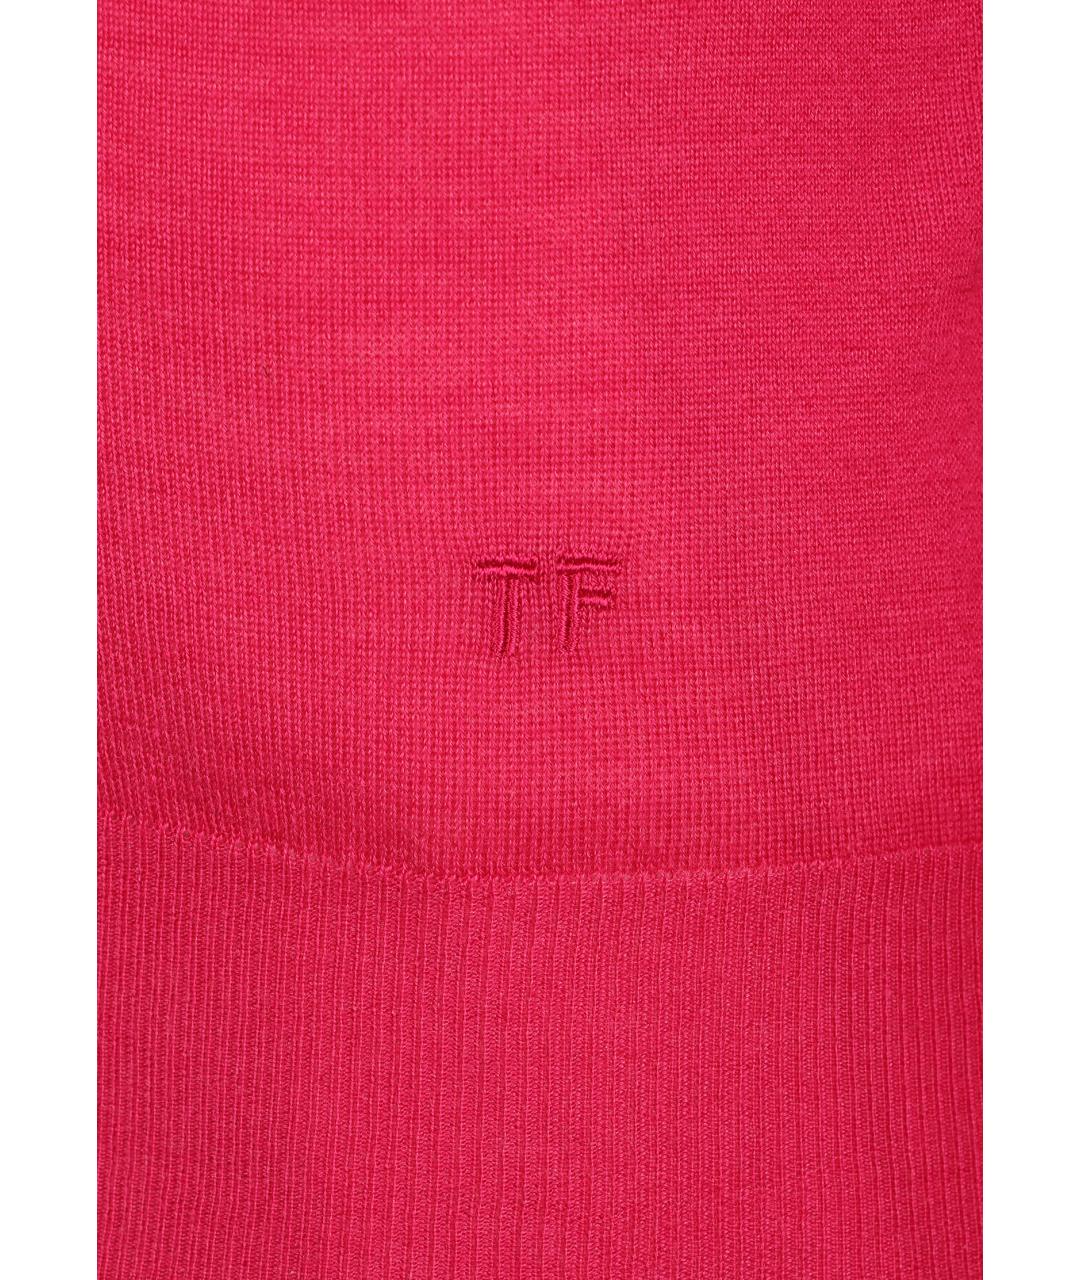 TOM FORD Розовый кашемировый джемпер / свитер, фото 4